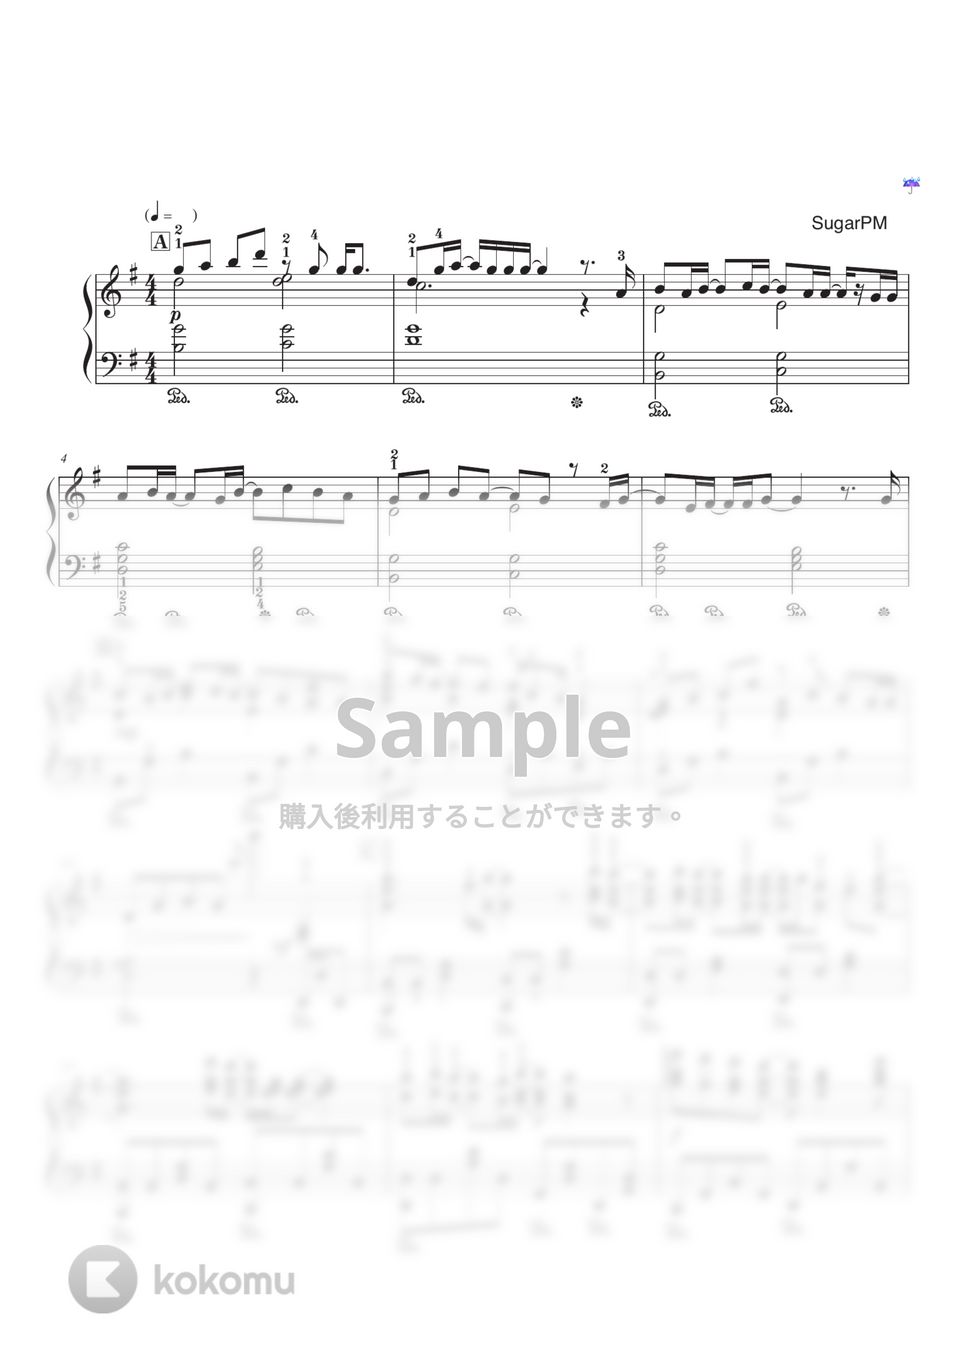 王様ランキング - Oz./yama ピアノソロ中級から　「王様ランキング」エンディング曲 by SugarPM